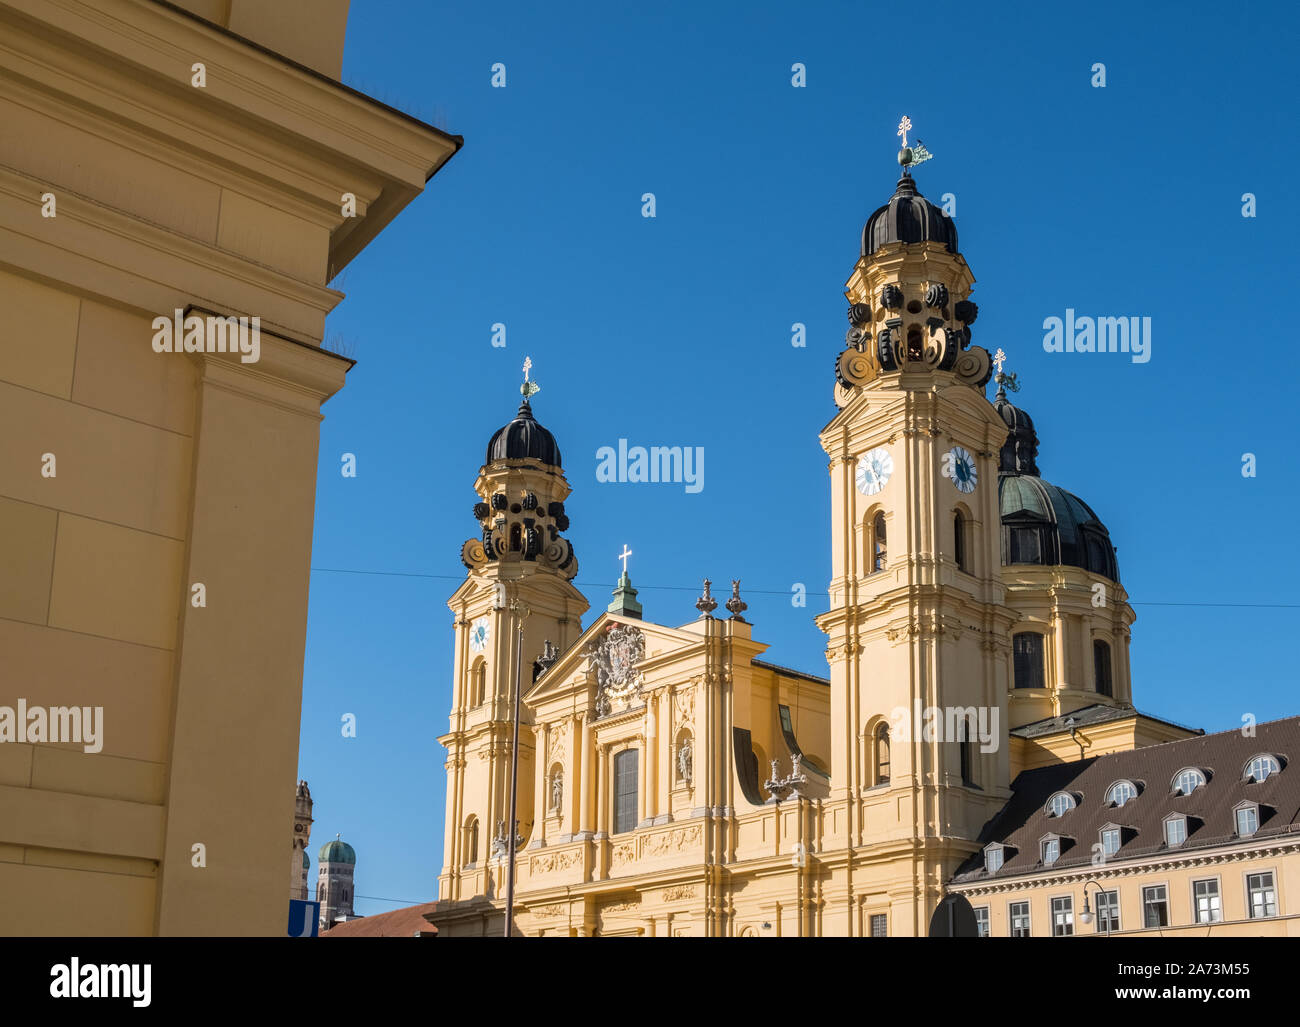 Altstadt, München, Deutschland. Kuppeln der gelben Gebäude Sehenswürdigkeit Theatinerkirche, eine römisch-katholische Kirche mit barocker Architektur Fassade. Stockfoto